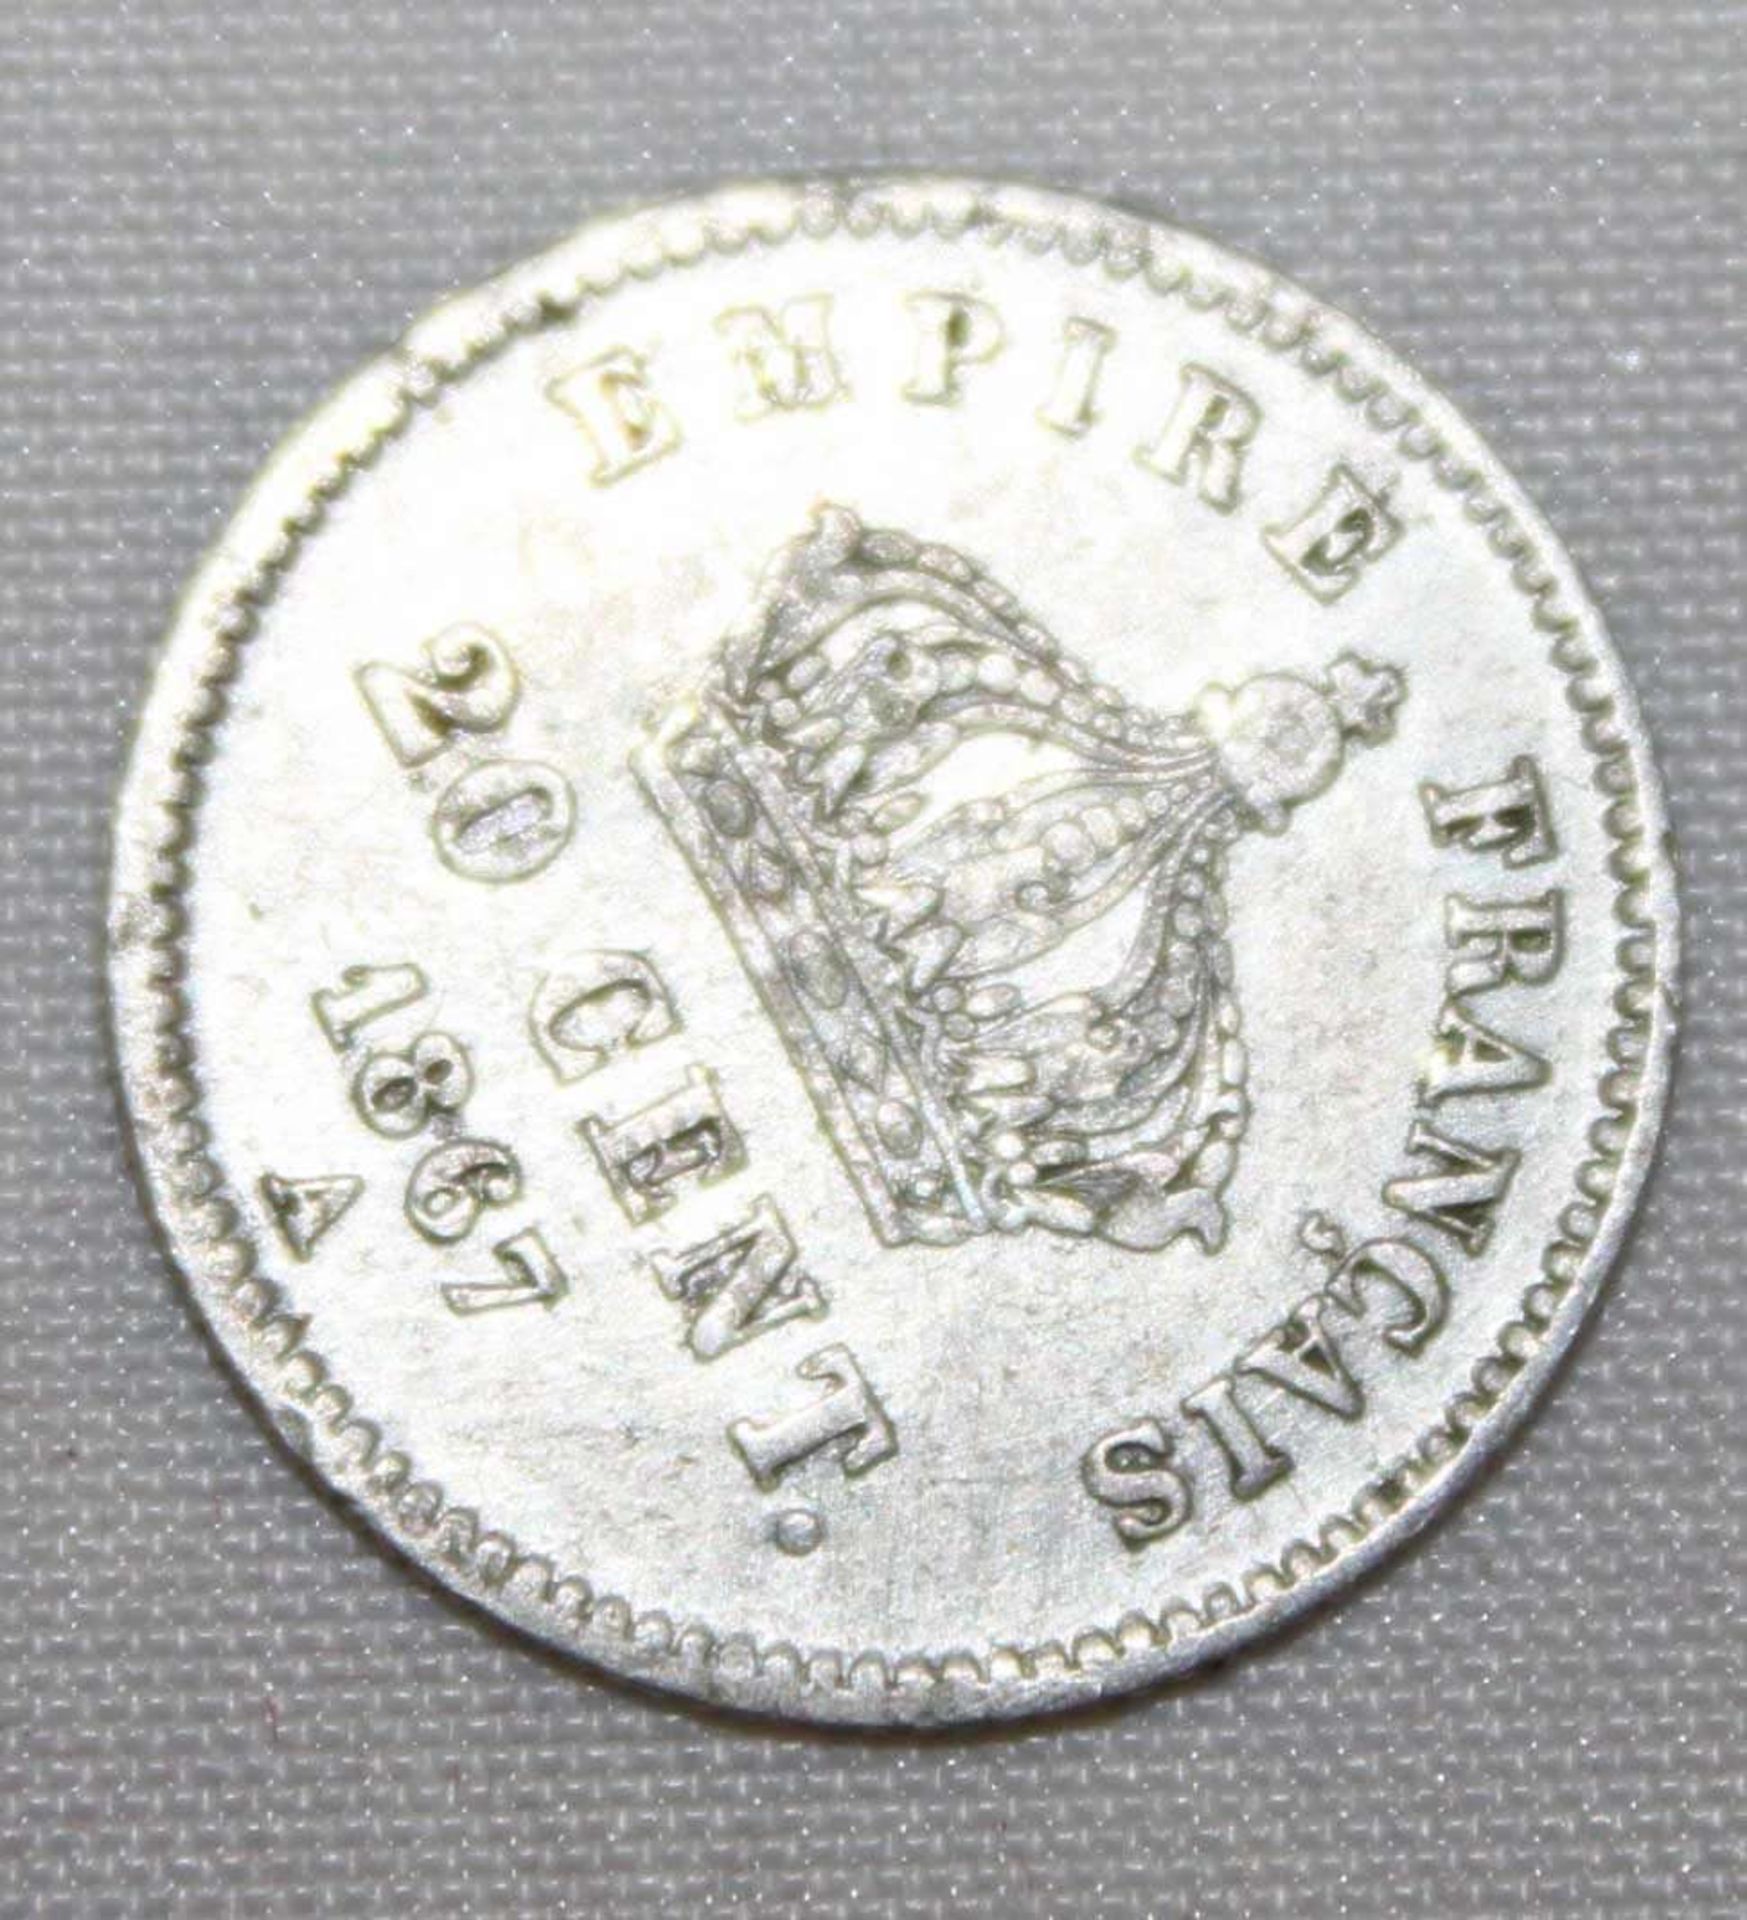 Frankreich 1867, Napoleon III., 20 cent, 1867A, Erhaltung: vorzüglich France 1867, Napoleon III, - Image 2 of 2